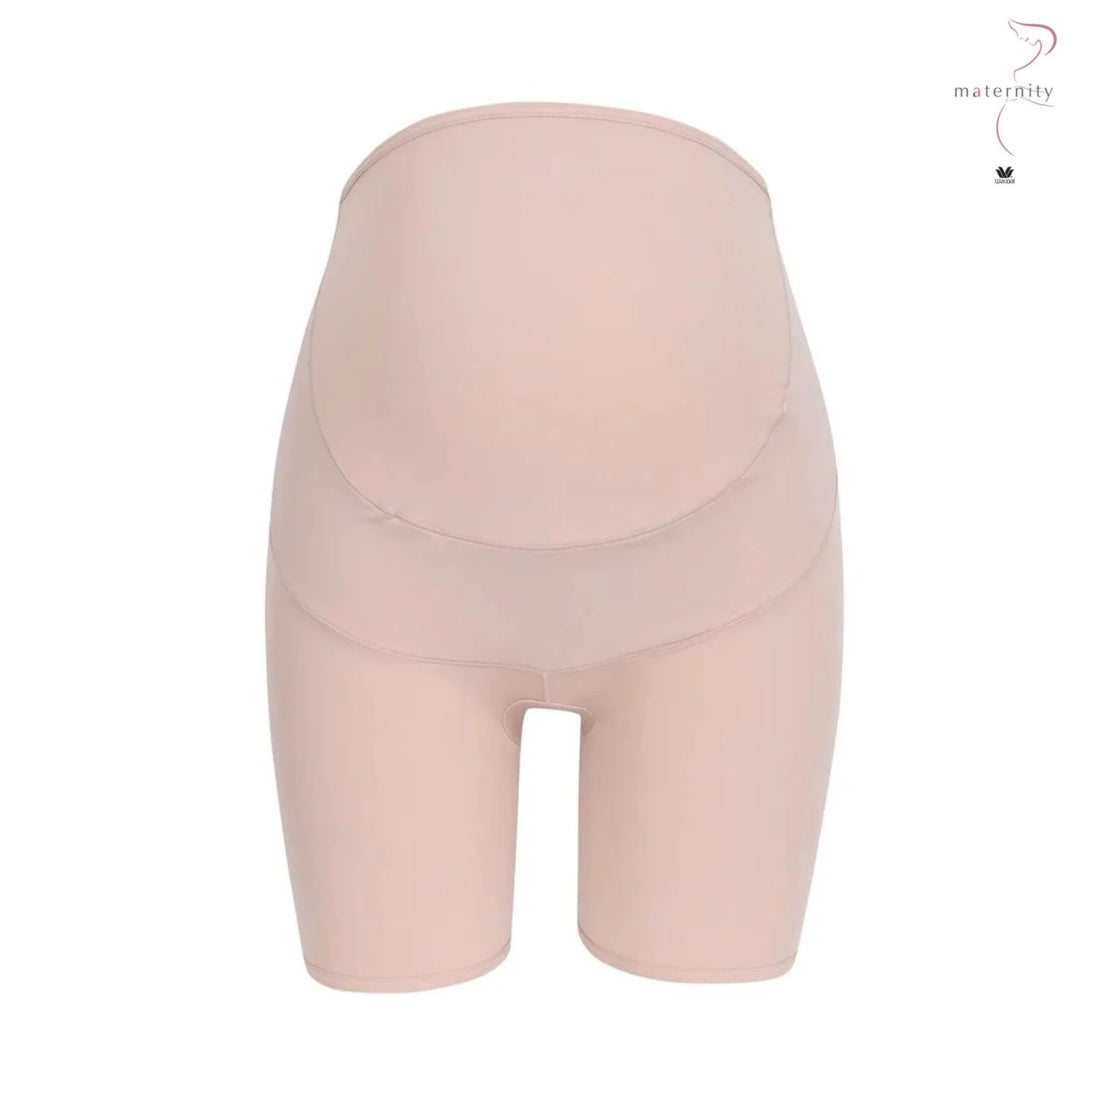 Wacoal Maternity Panty Full Body Shaper Model WM6180 Beige (BE